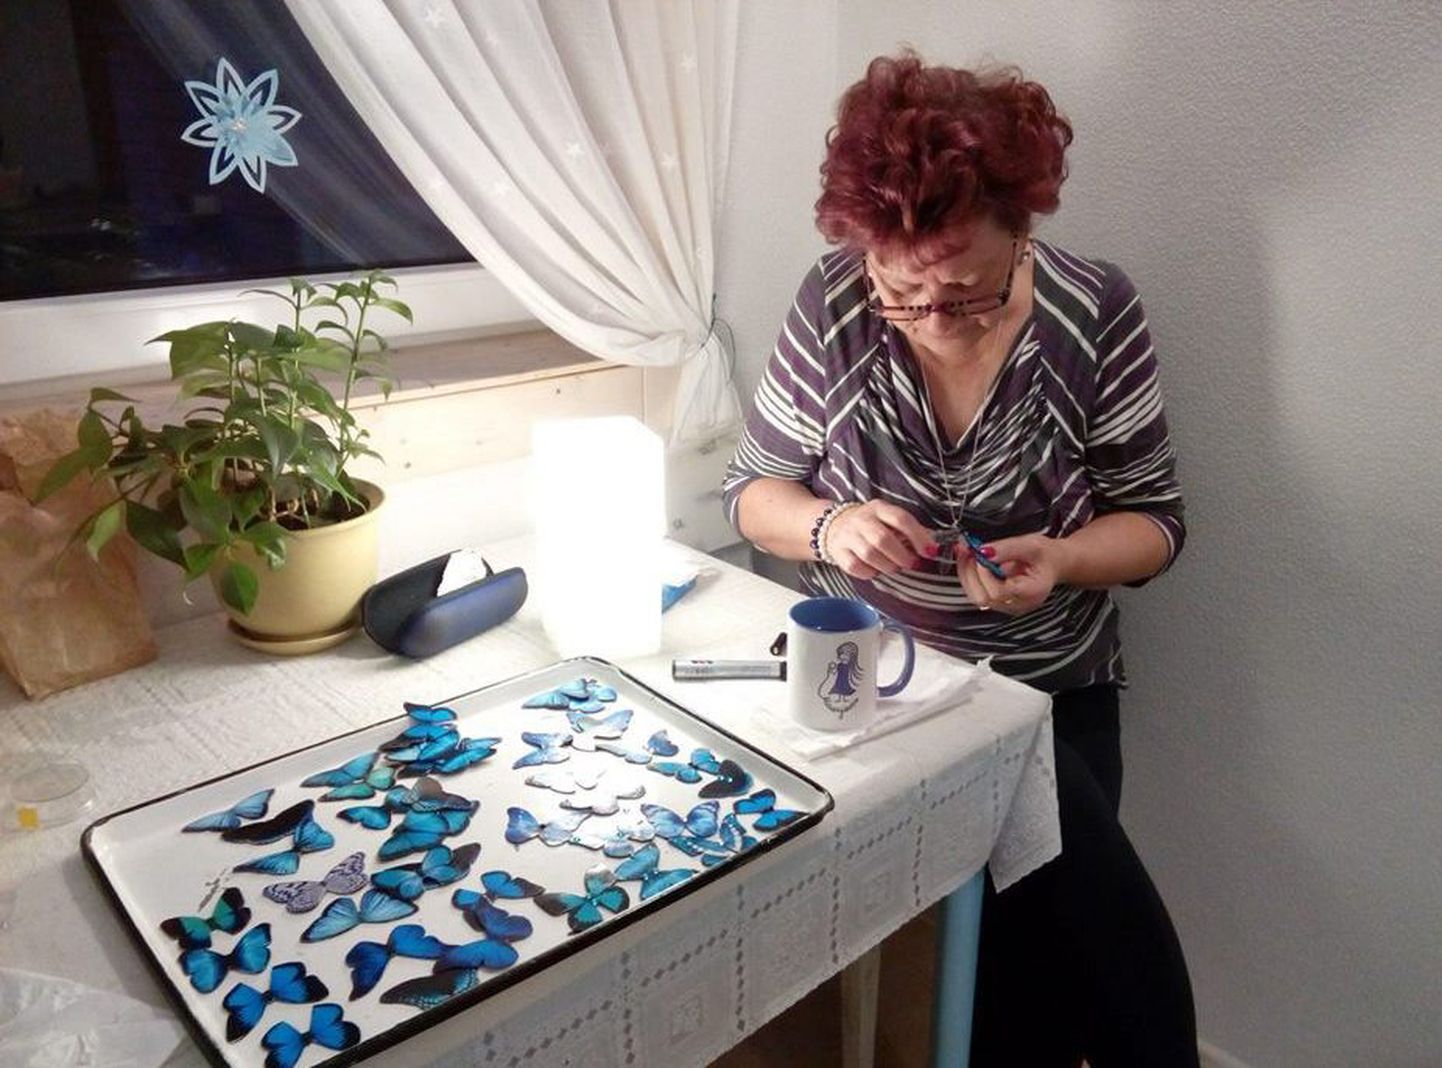 Väike-Maarja naiskodukaitsja Ellen Sepp valmistab liblikamärke.